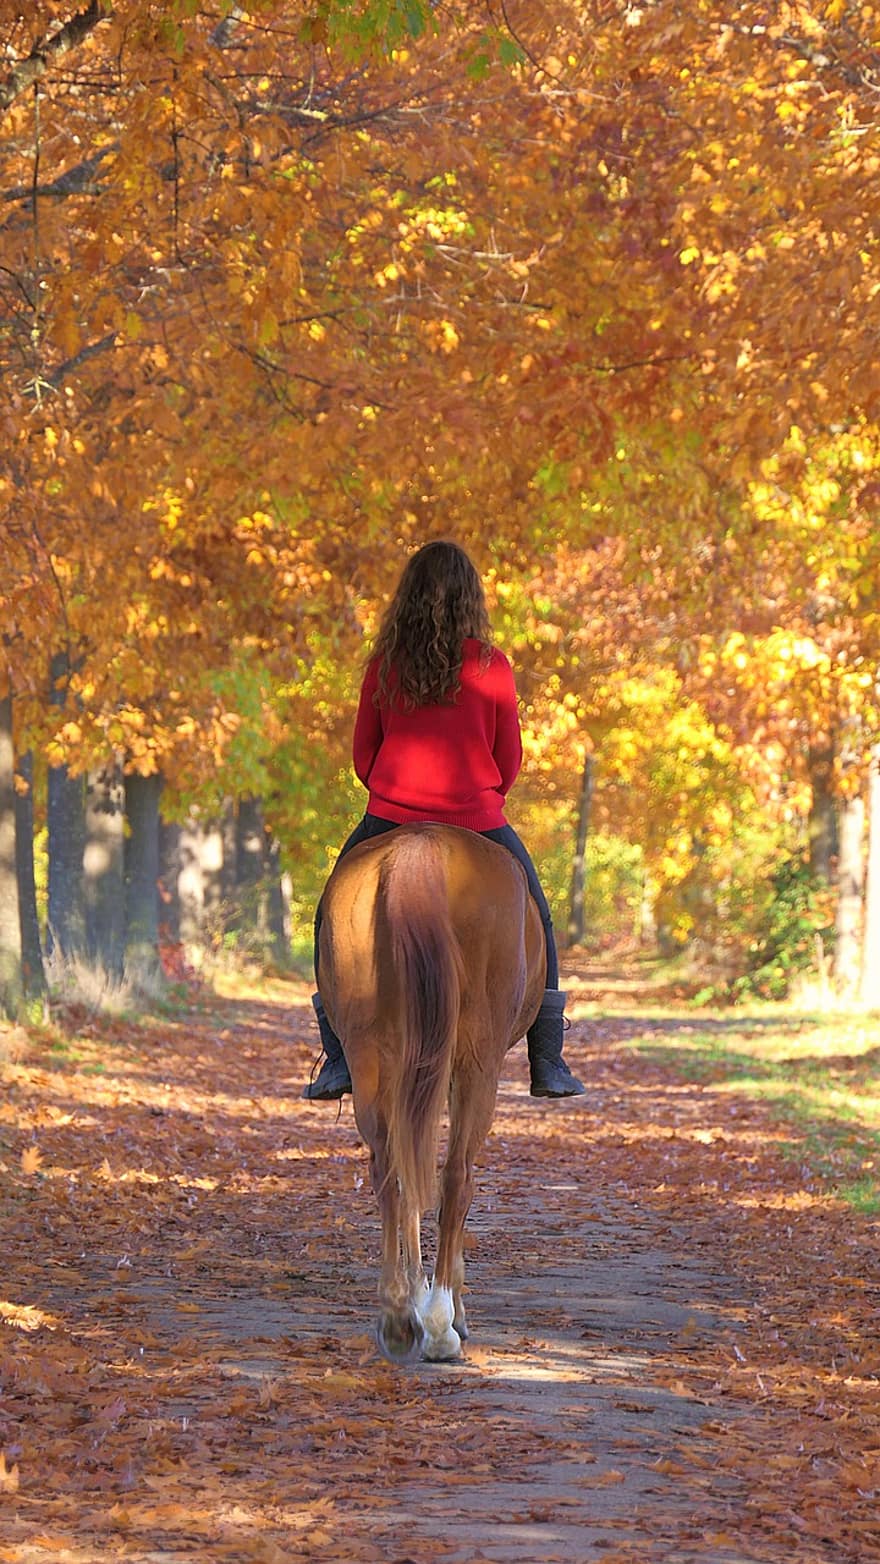 cavall, noia, passeig, Camí, caure, passejades a cavall, muntar a cavall, equí, eqüestre, equestrienne, ruta